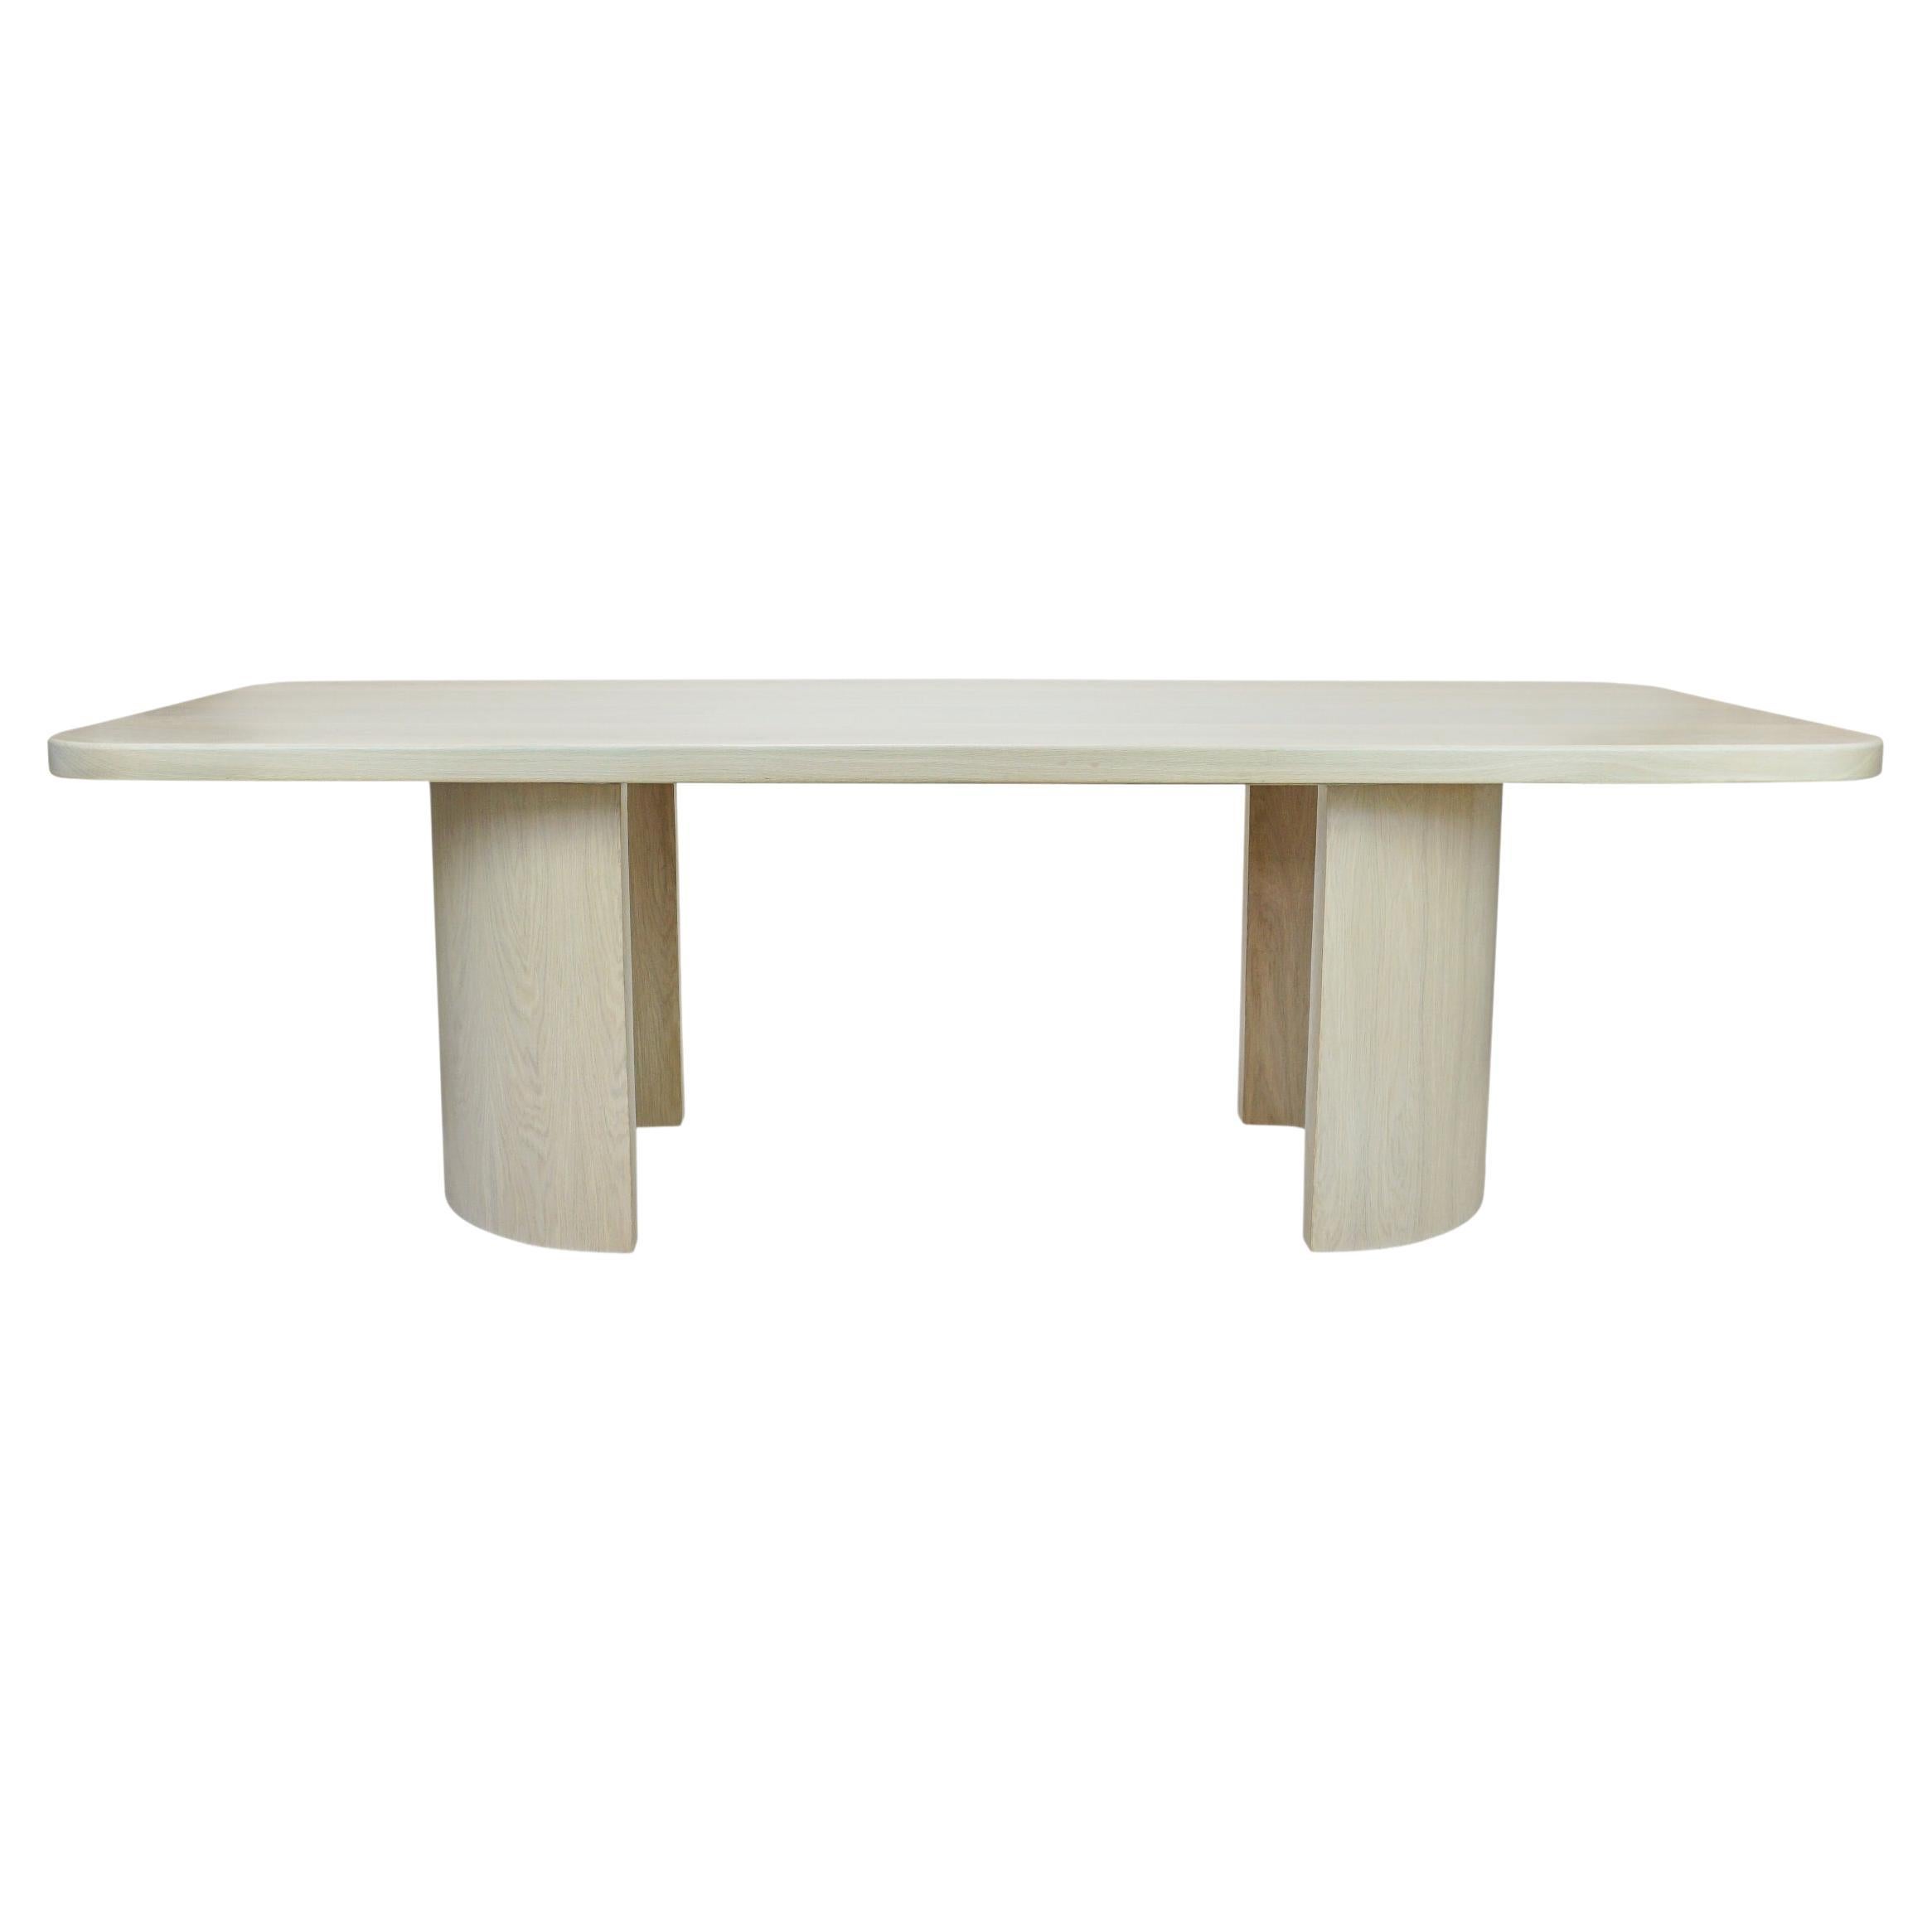 Moderner rechteckiger Esstisch aus weißer Eiche mit halben Zylinderbeinen + runden Ecken